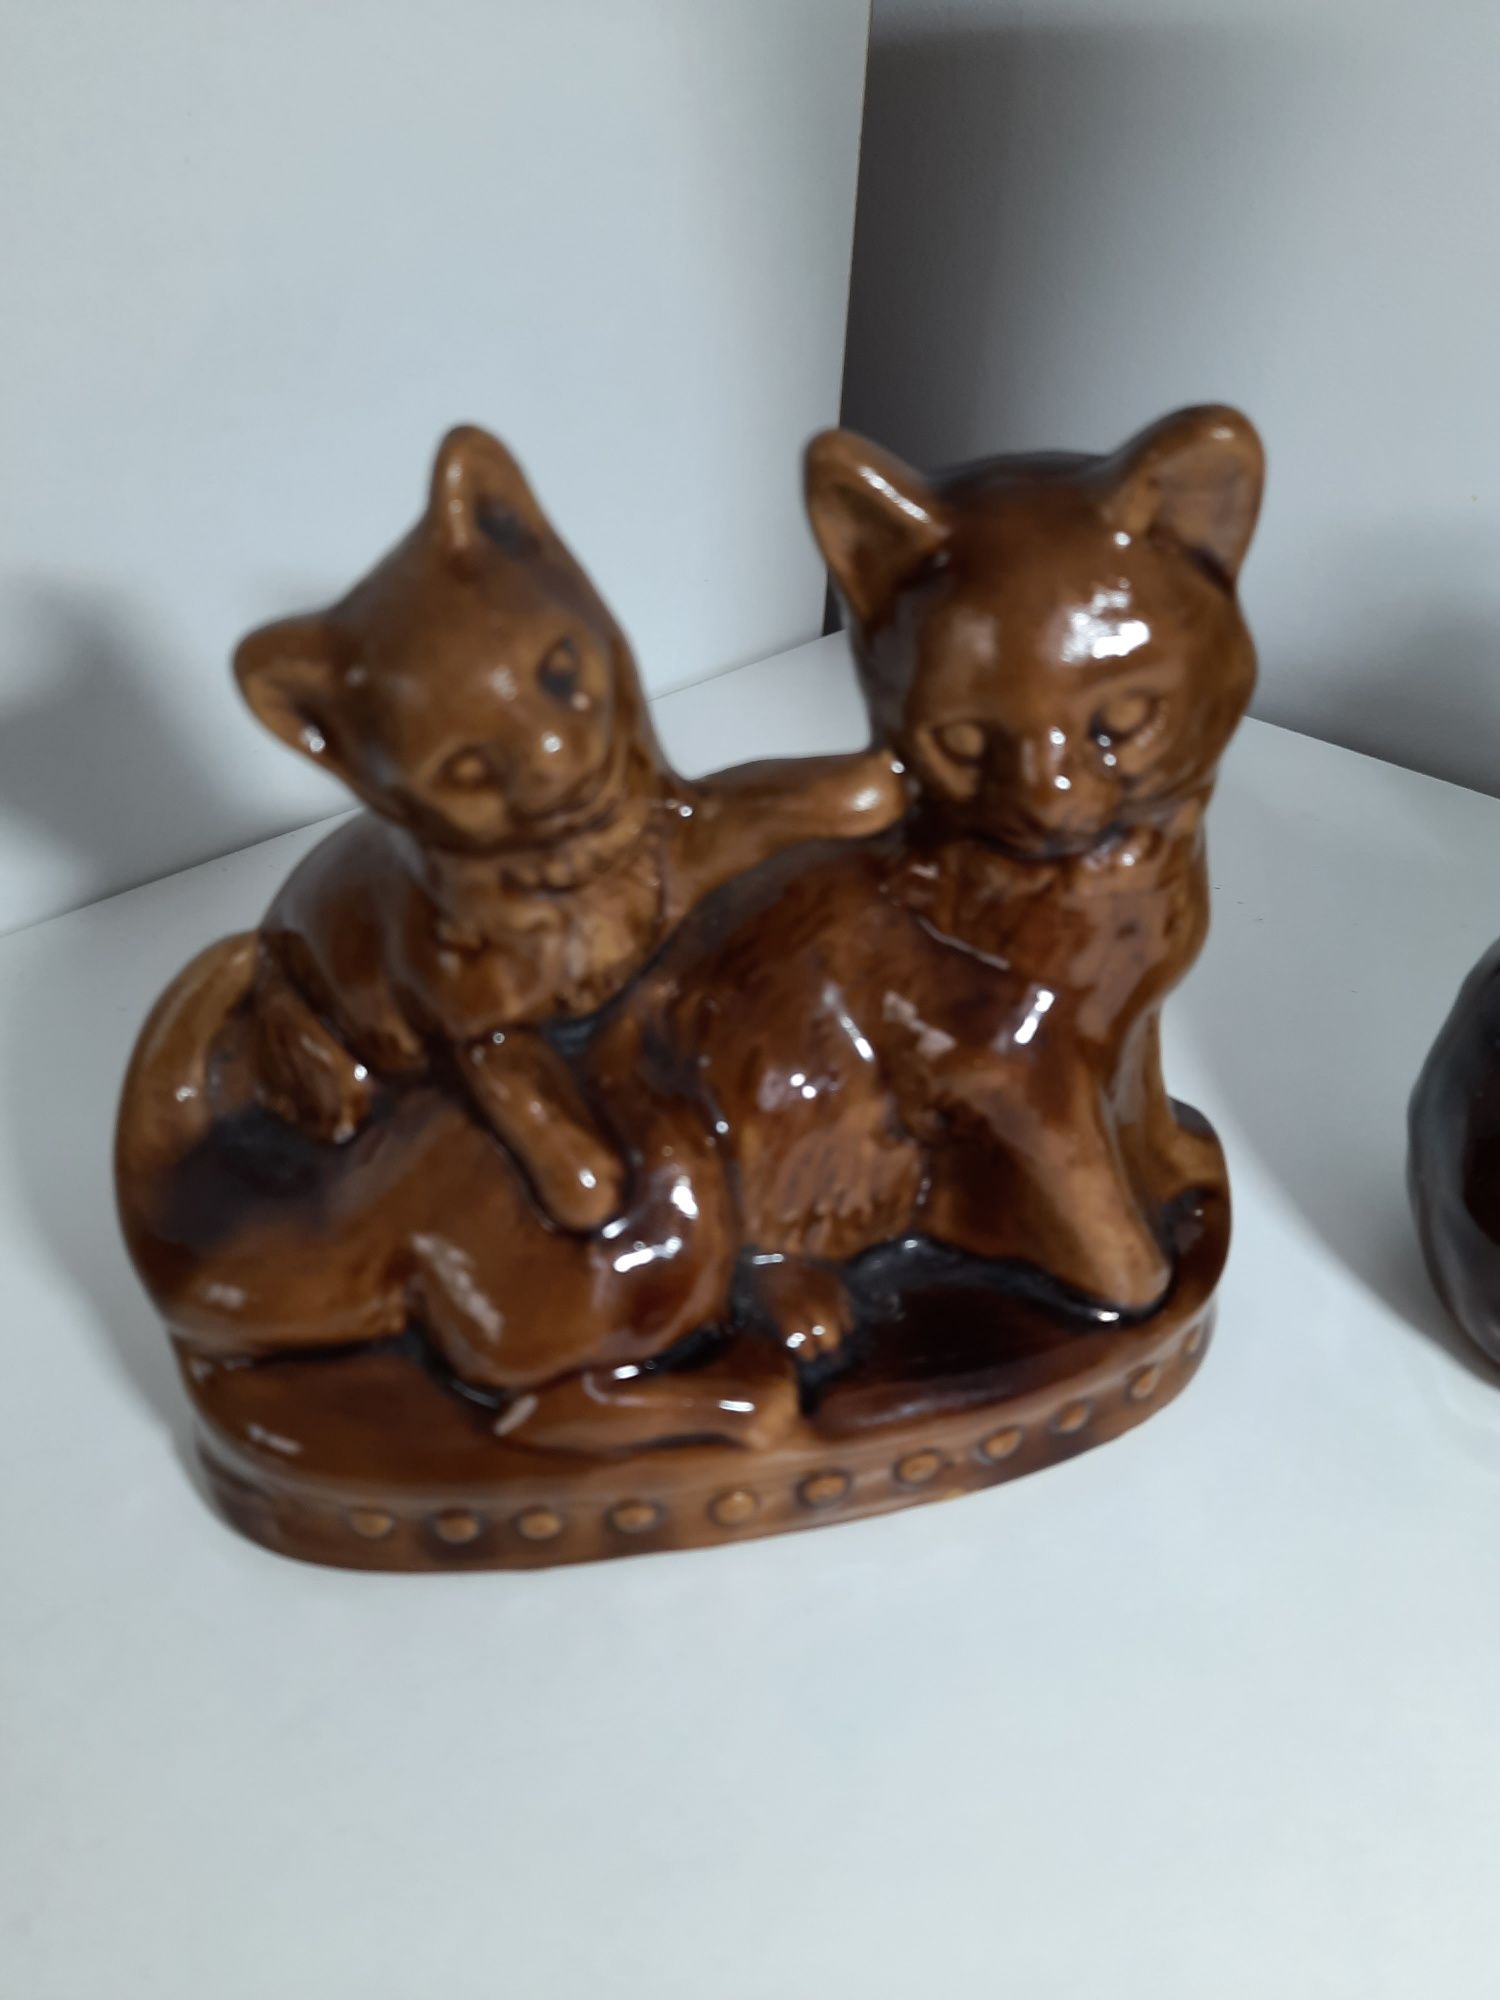 Wazon ceramiczny wiewiórka i ceramiczna figurka kotków